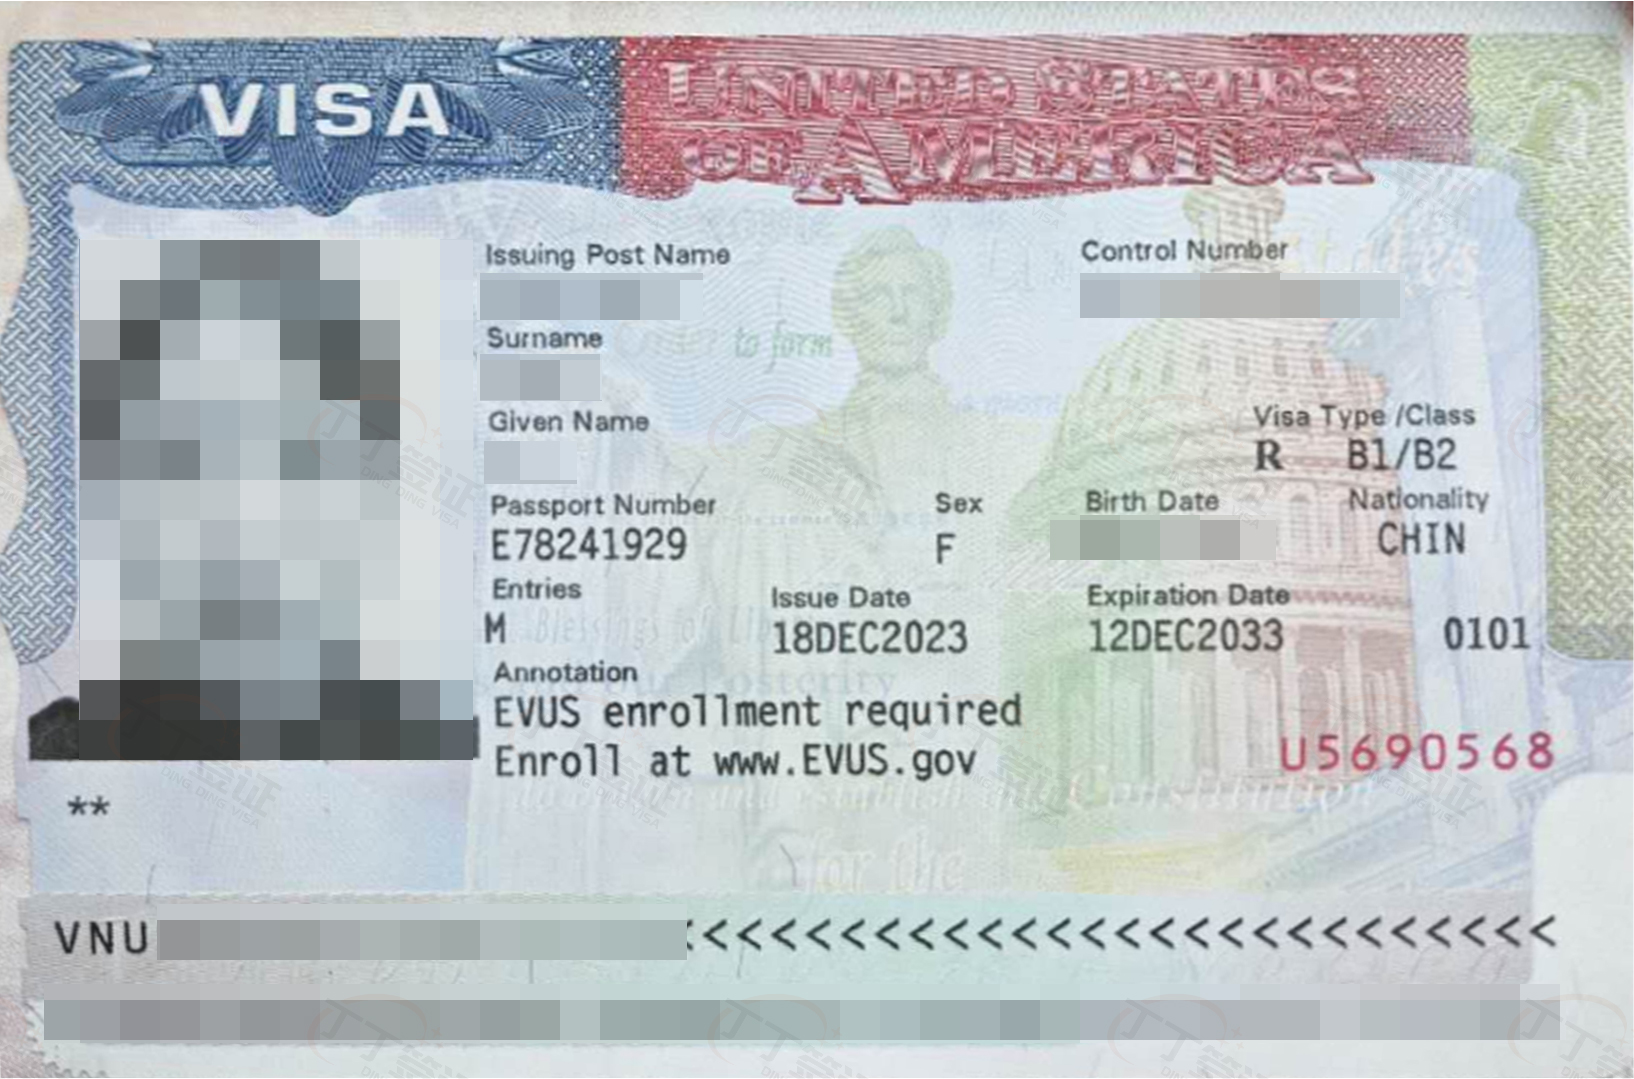 客人在智利申请美国旅行签证，有智利长居卡，加急预约+顺利面签通过，10年有效期多次往返，经常去南美国家的客人，有美签是最方便的